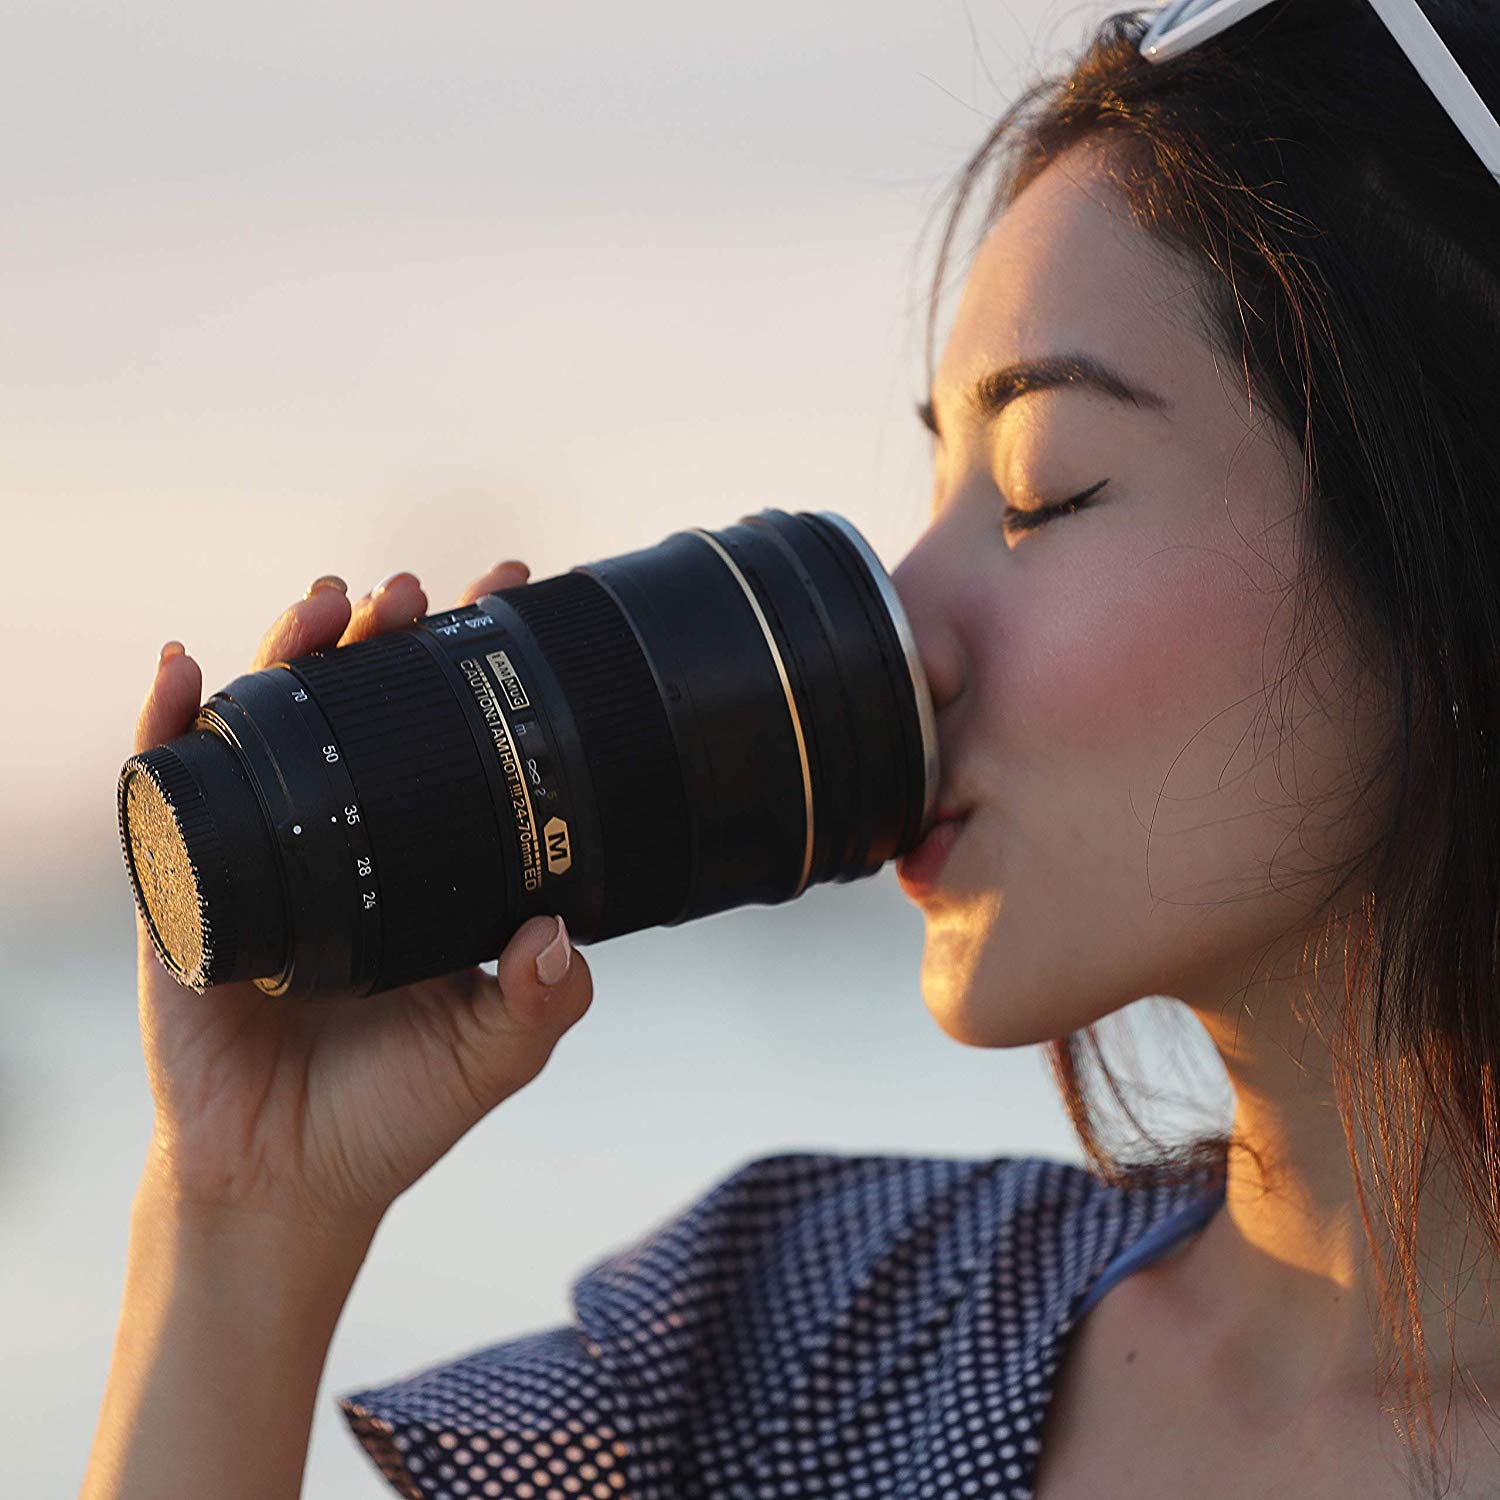 Polaroid™ - The Camera Lens Coffee Mug - Great Value Novelty 